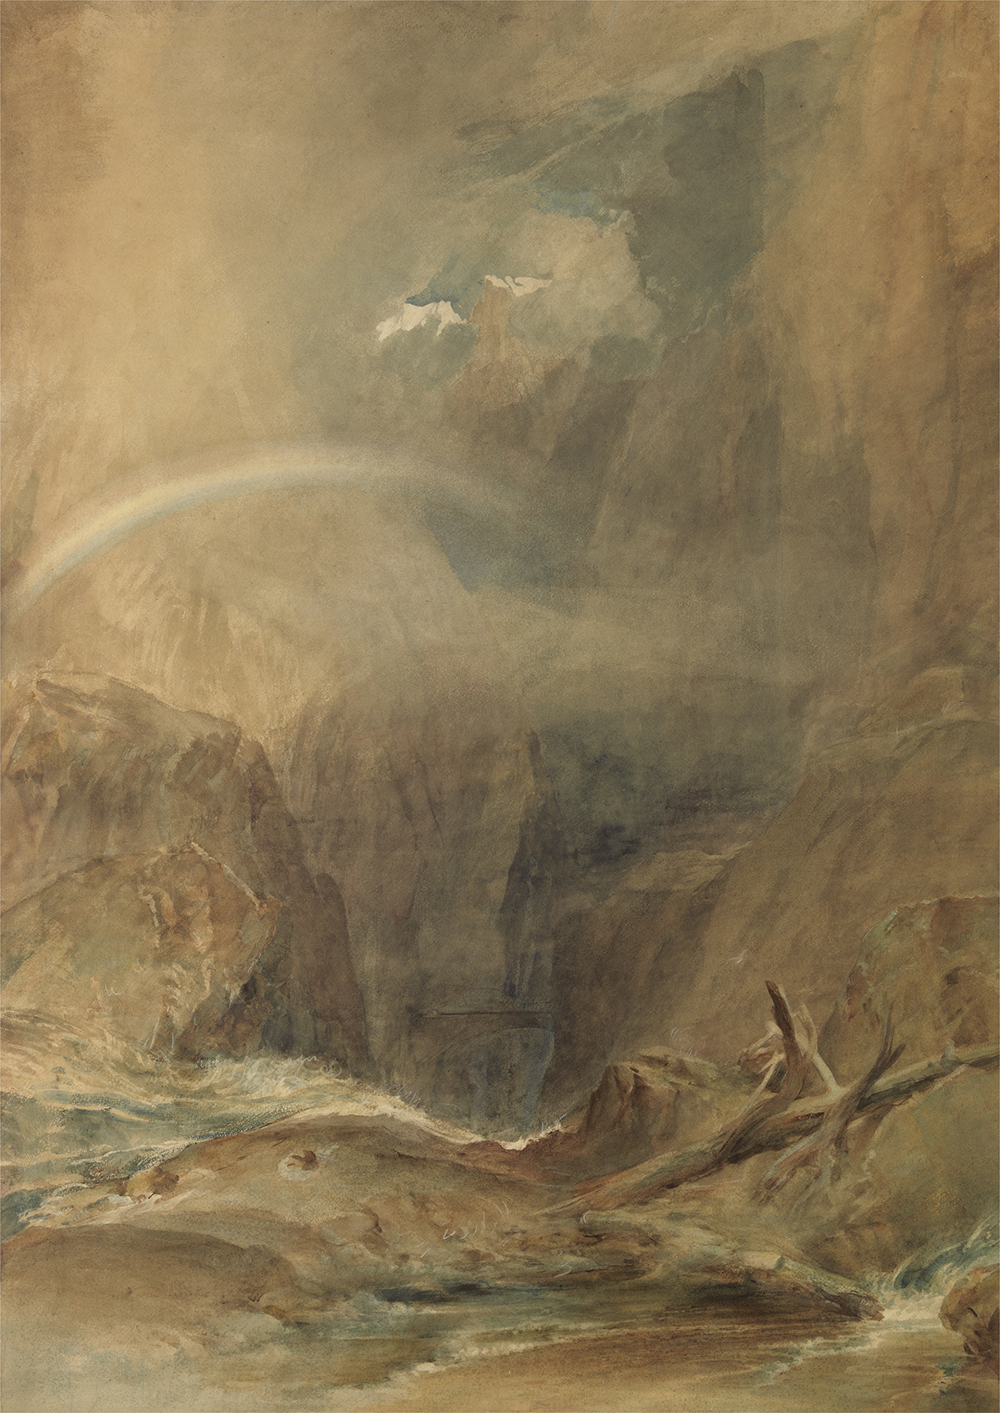 Devil’s Bridge, Saint Gotthard’s Pass, by J.M.W. Turner, c. 1804. Yale Center for British Art, Paul Mellon Collection.